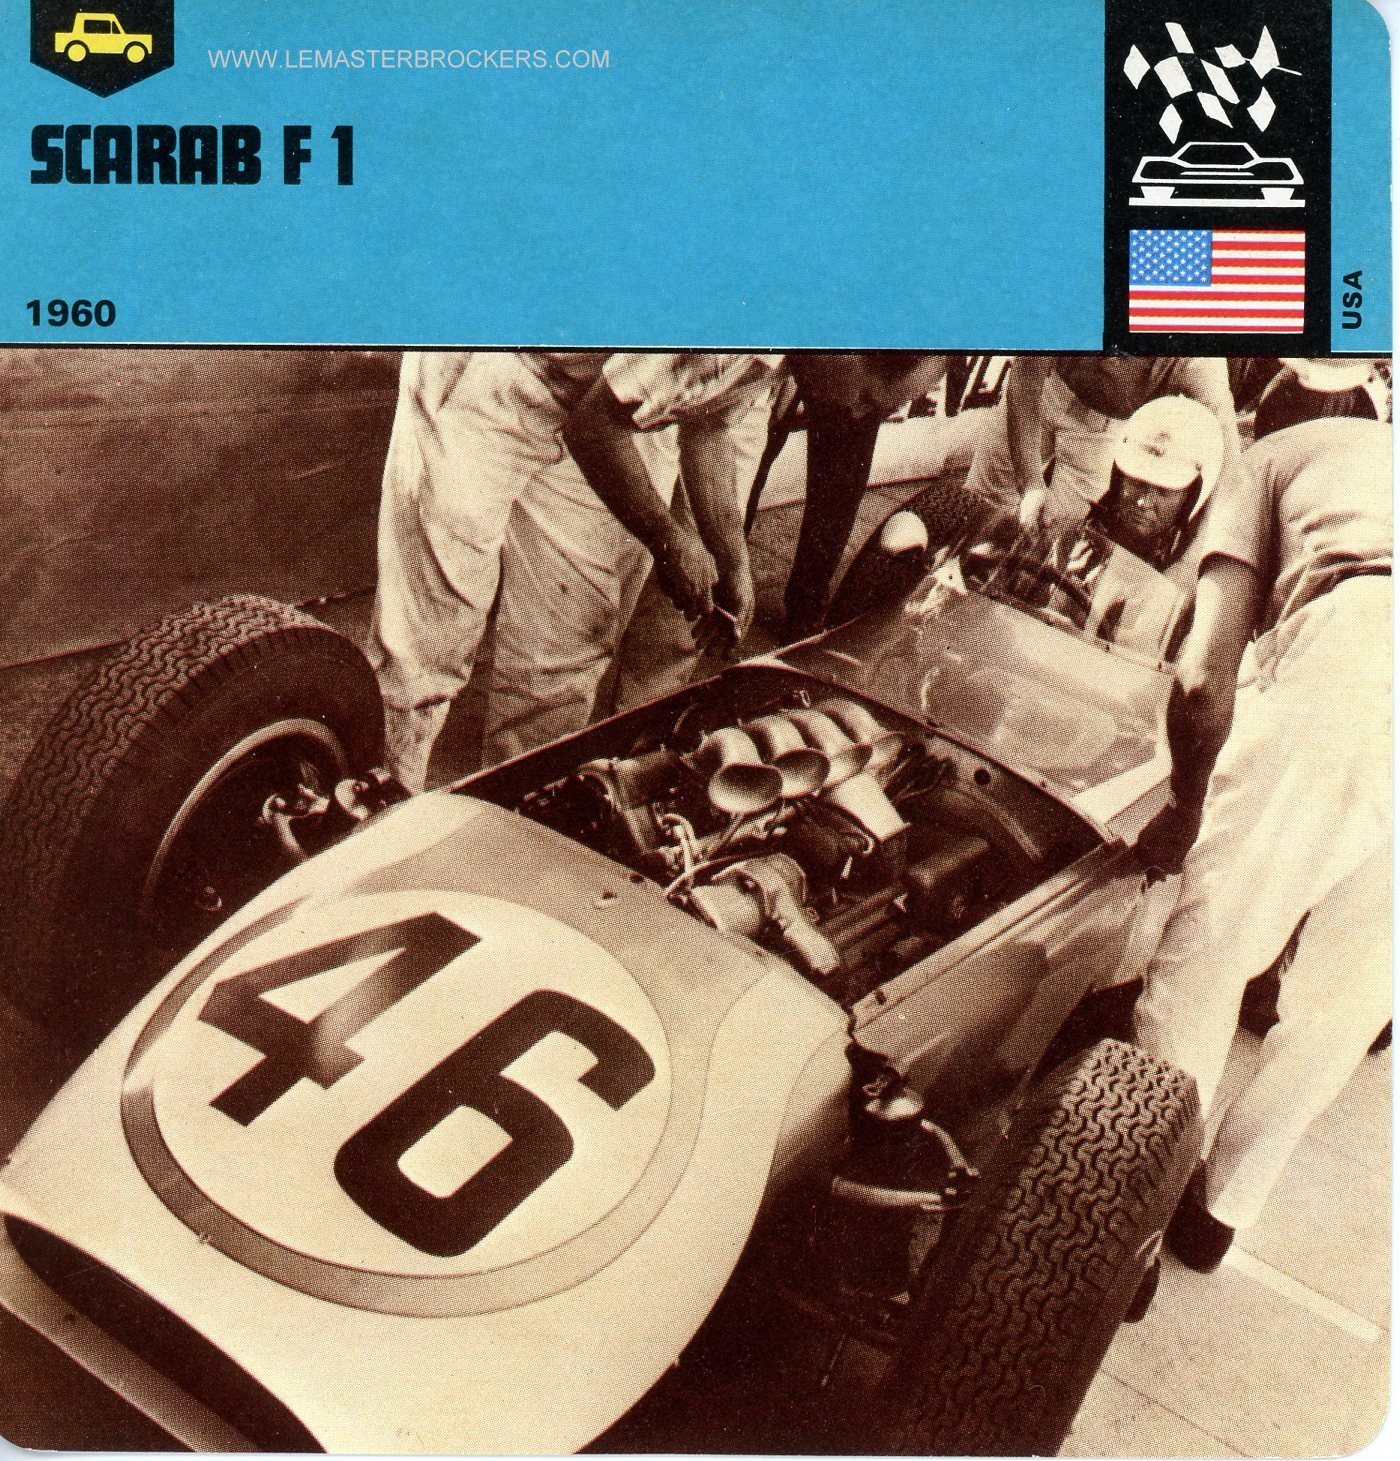 FICHE AUTO SCARAB F1 1960